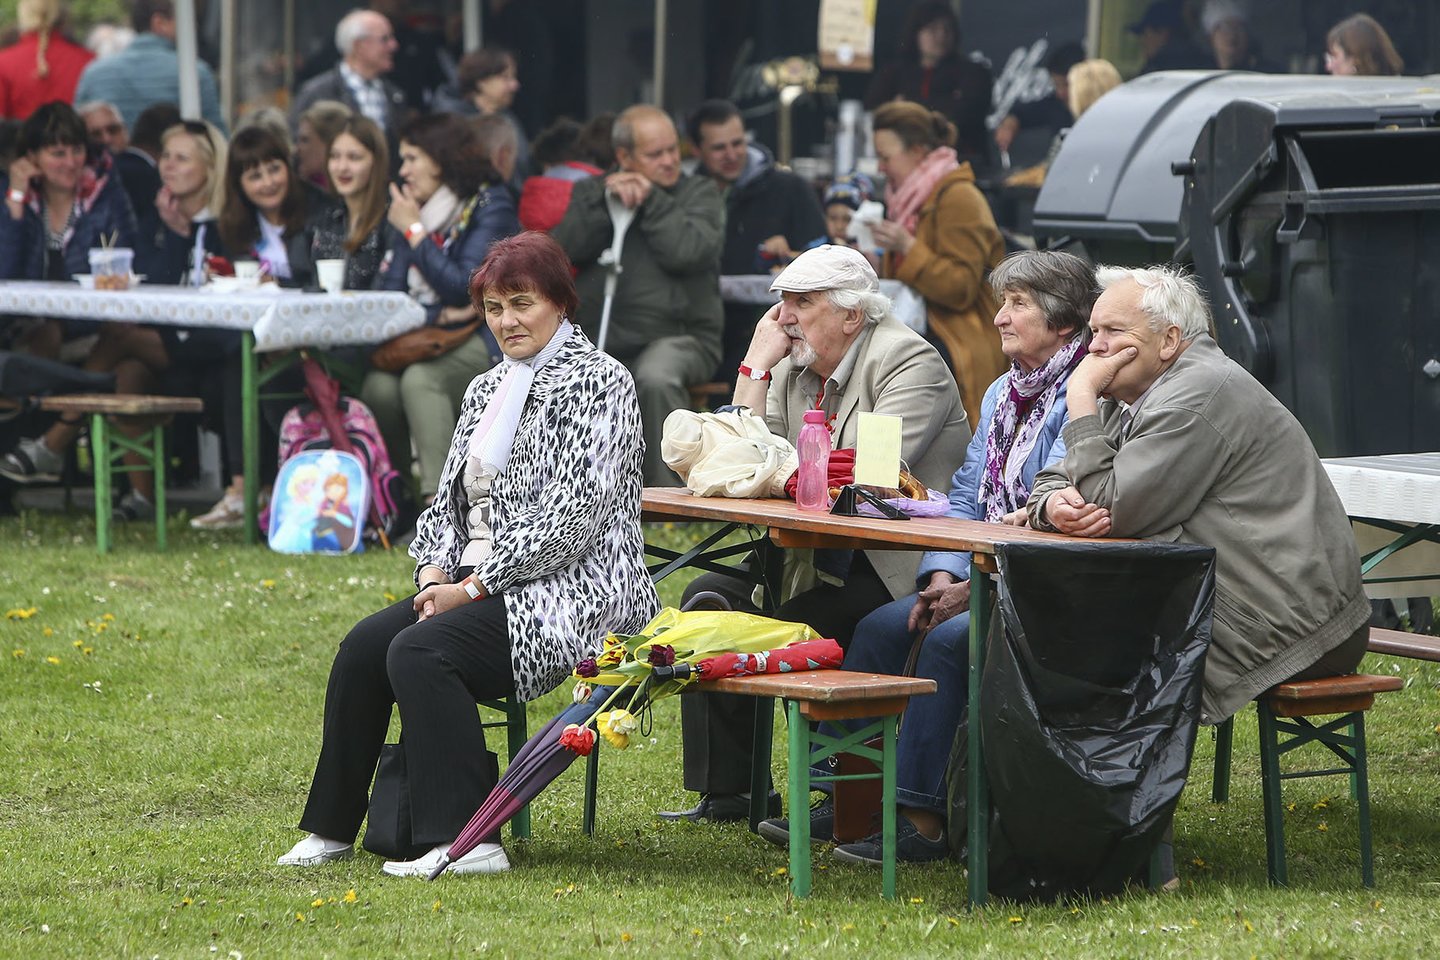 Burbiškio dvare šurmuliuoja 19 kartą surengtas Tulpių žydėjimo festivalis. <br>G.Šiupario nuotr.